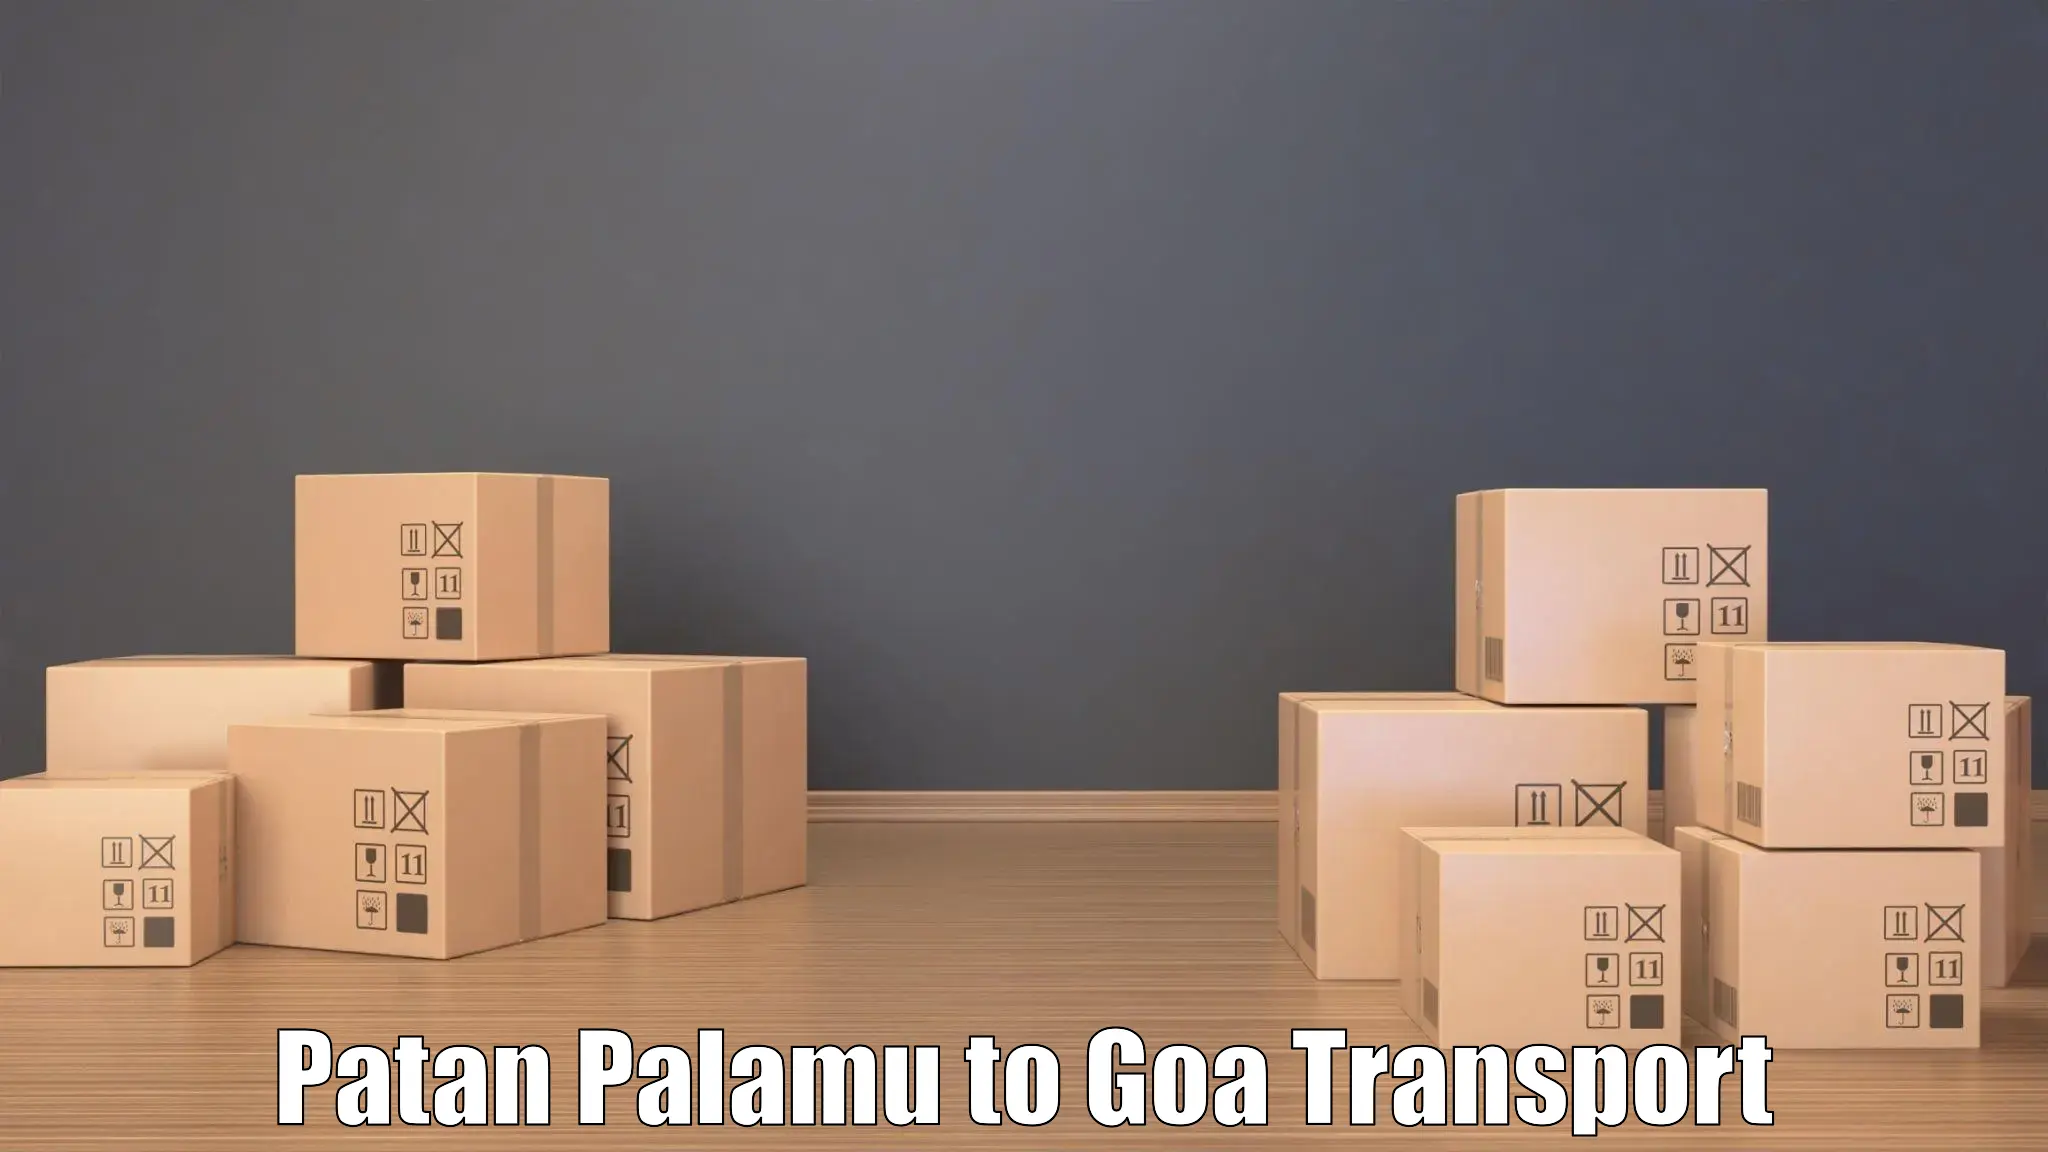 Daily transport service Patan Palamu to Goa